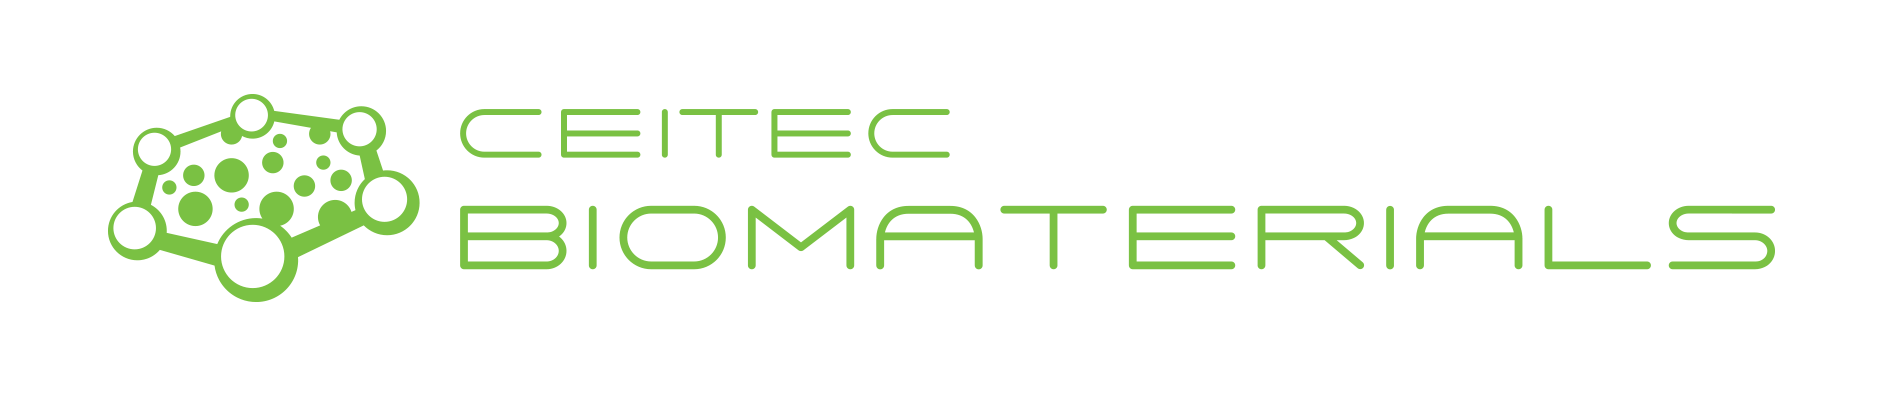 CEITEC Advanced Biomaterials Group - Lucy Vojtová